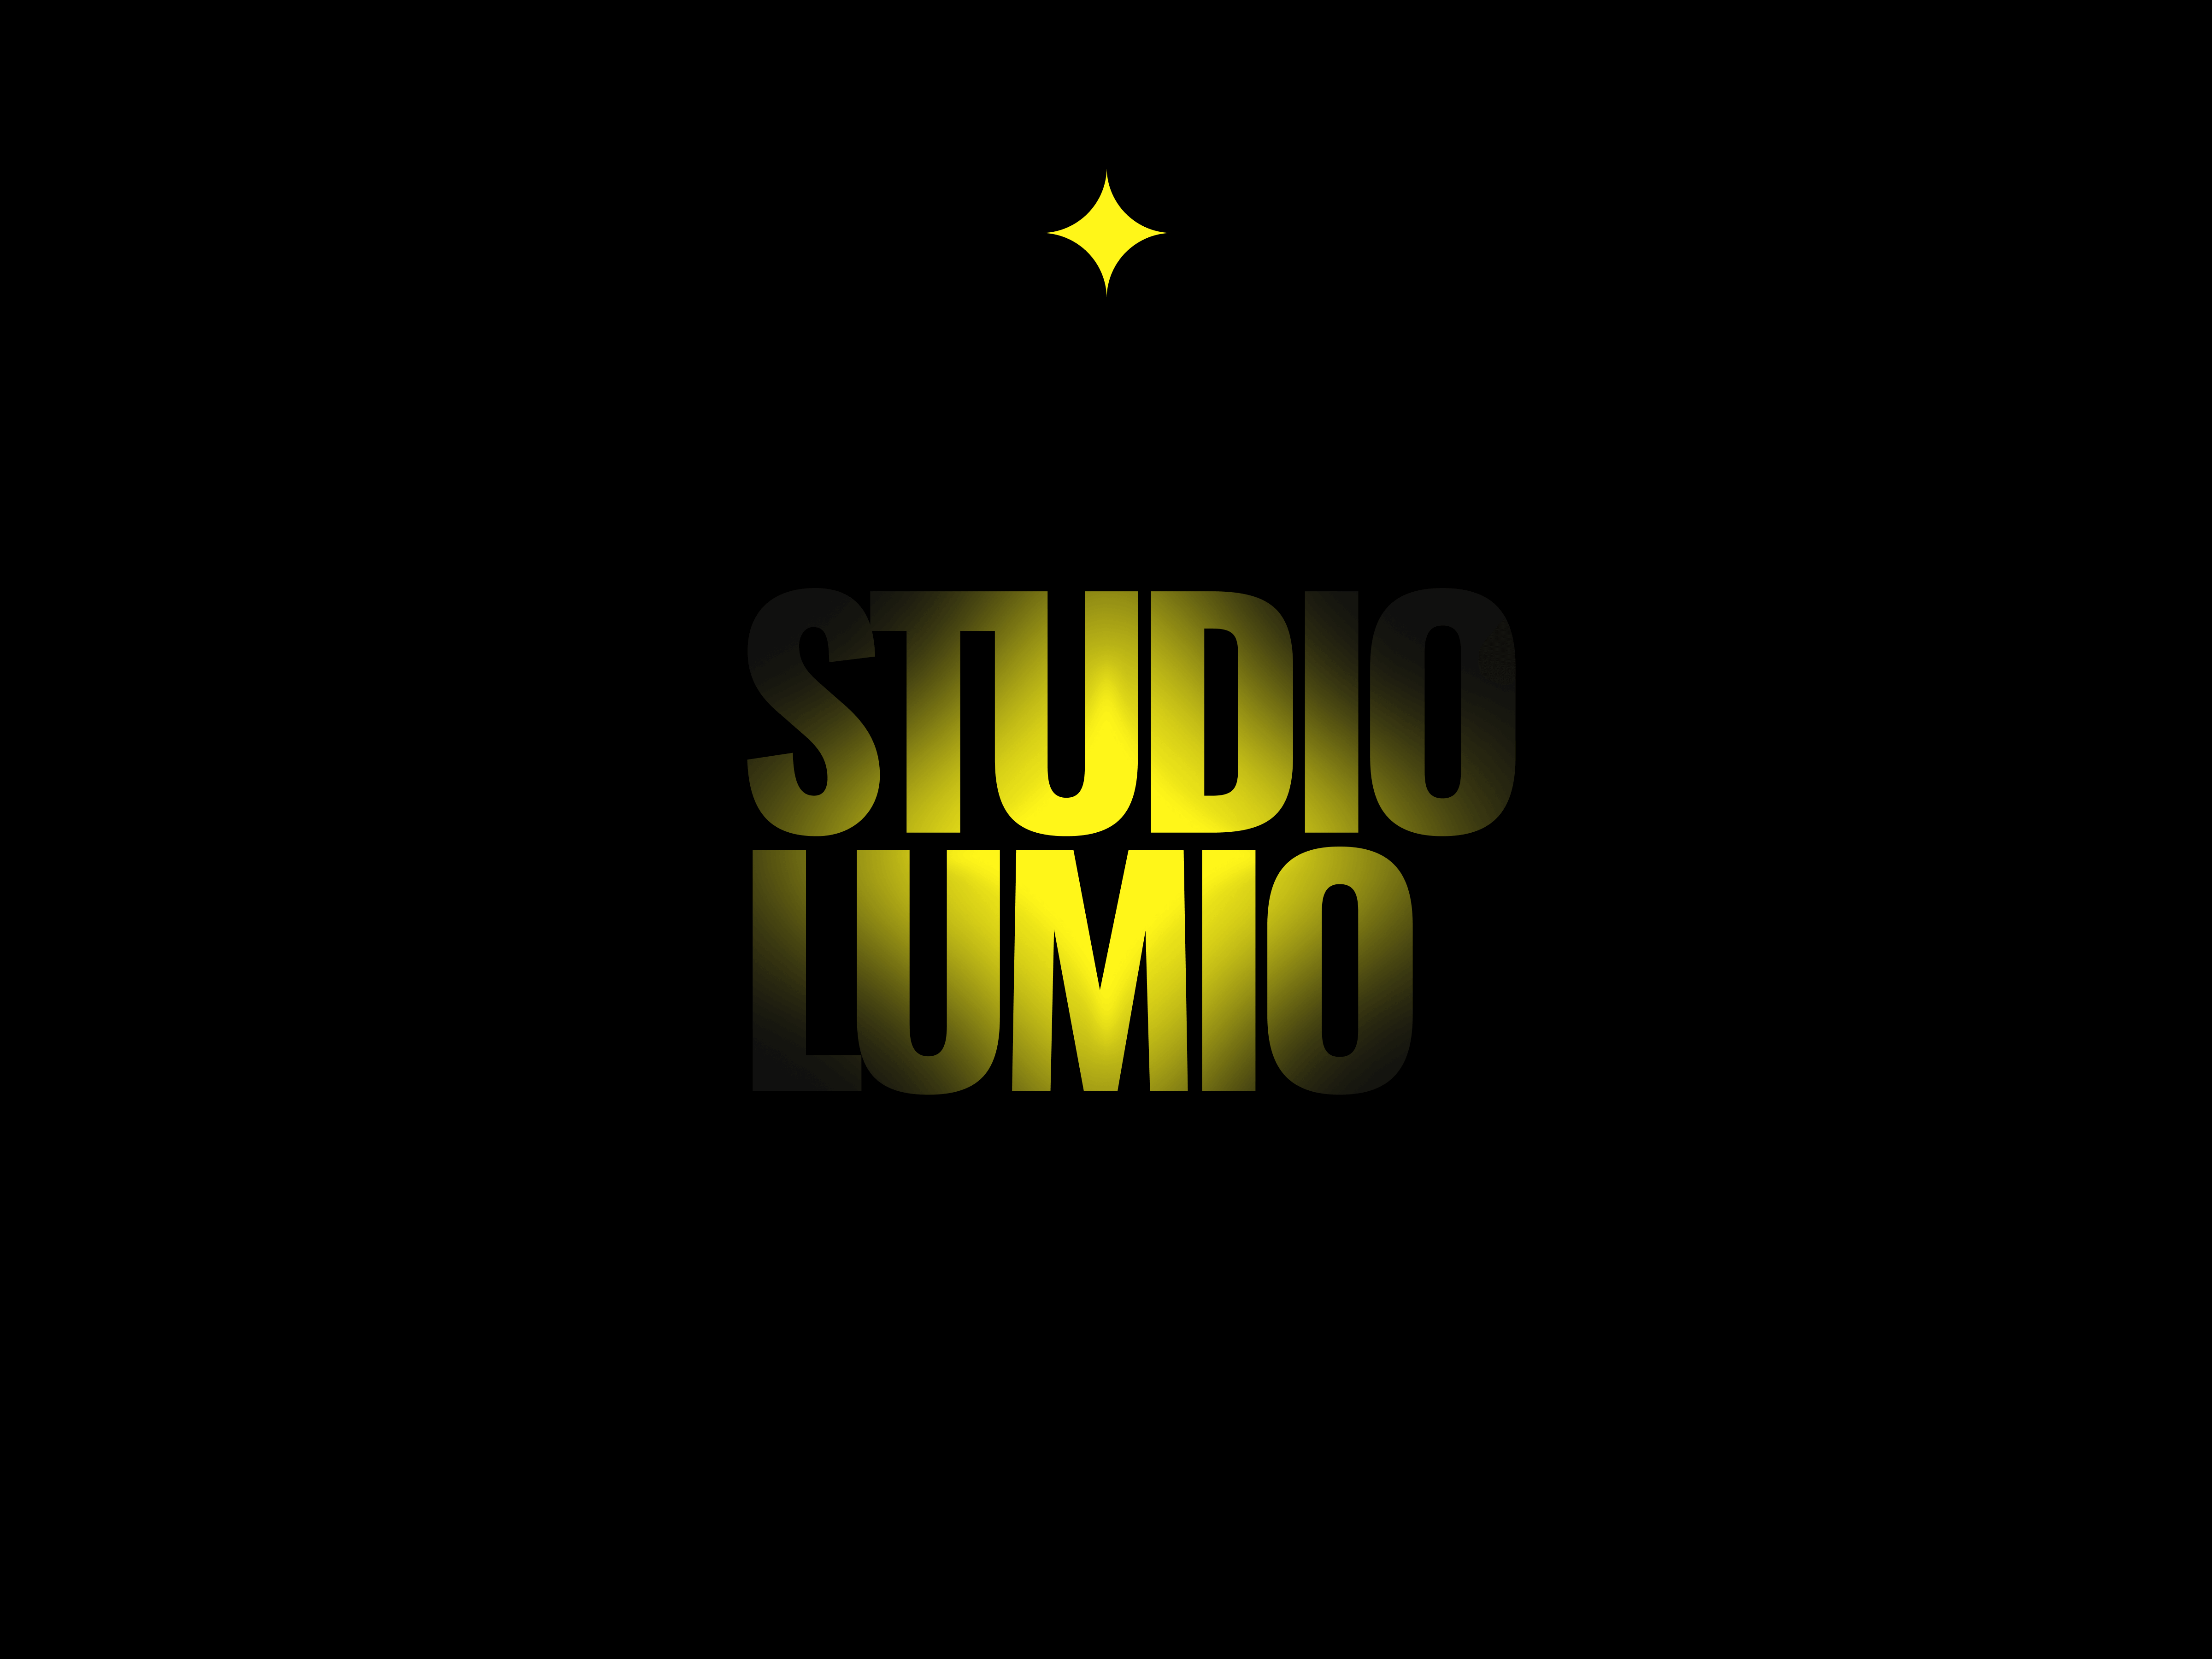 Studio Lumio